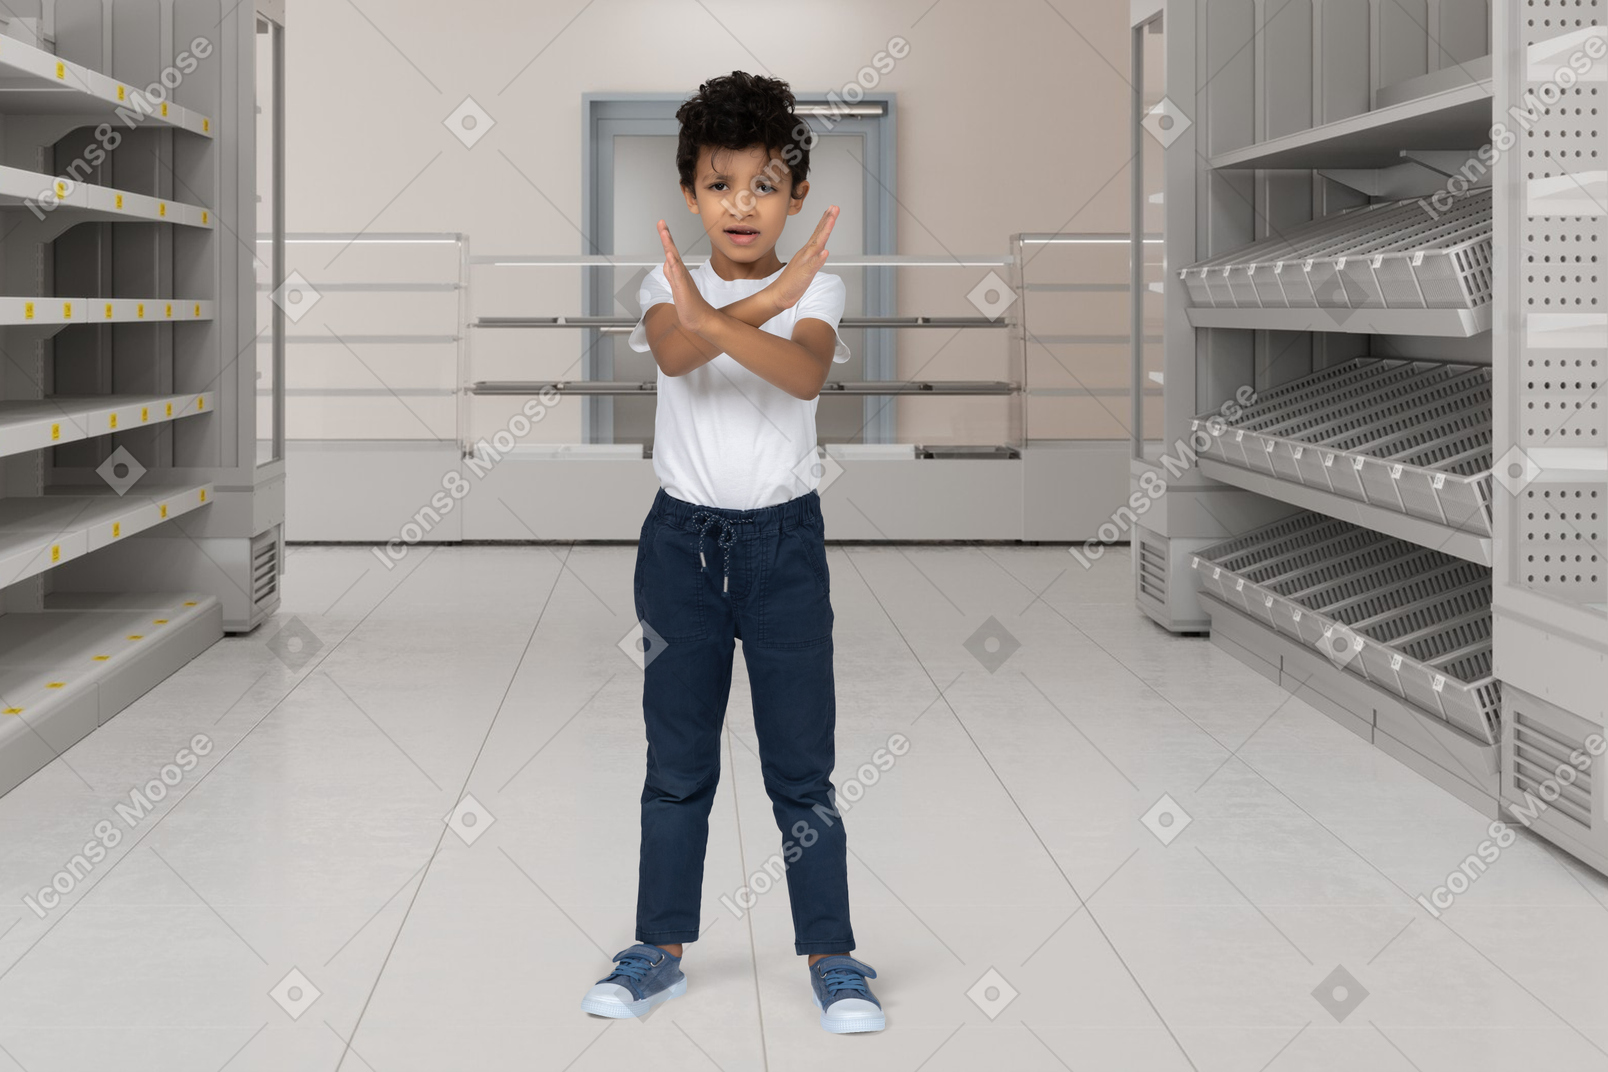 Мальчик стоит в супермаркете